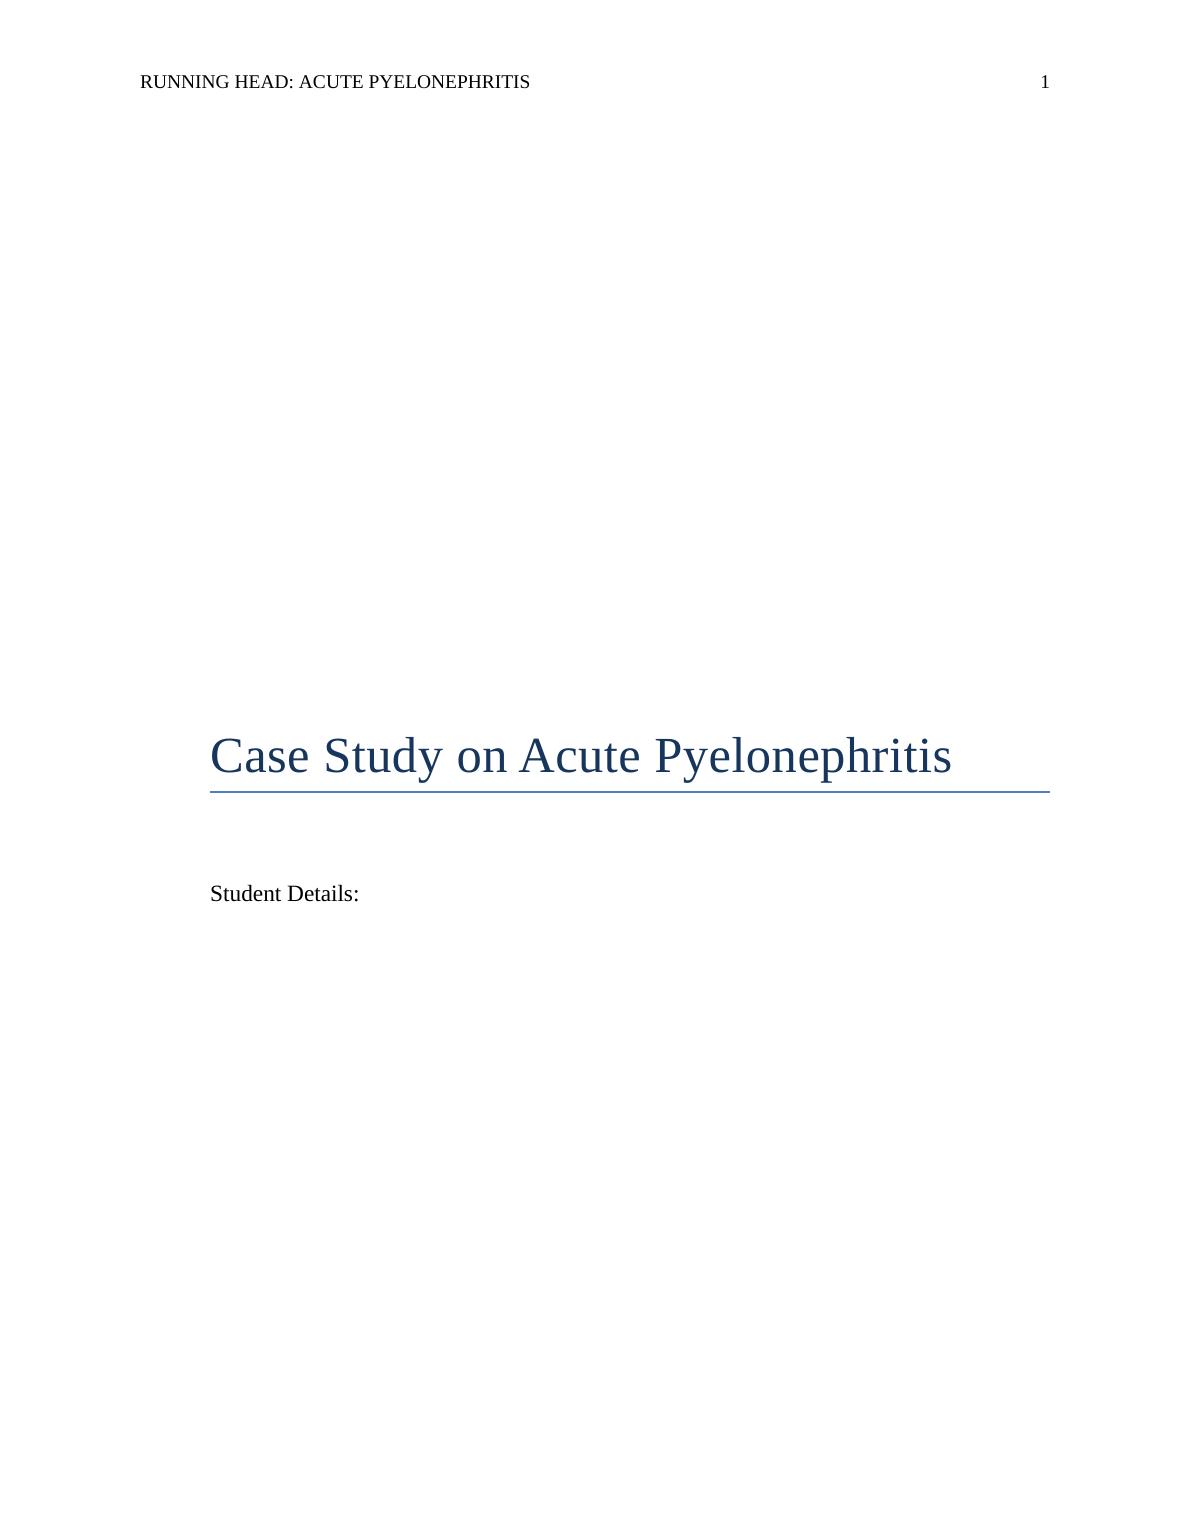 Case Study on Acute Pyelonephritis 2022_1